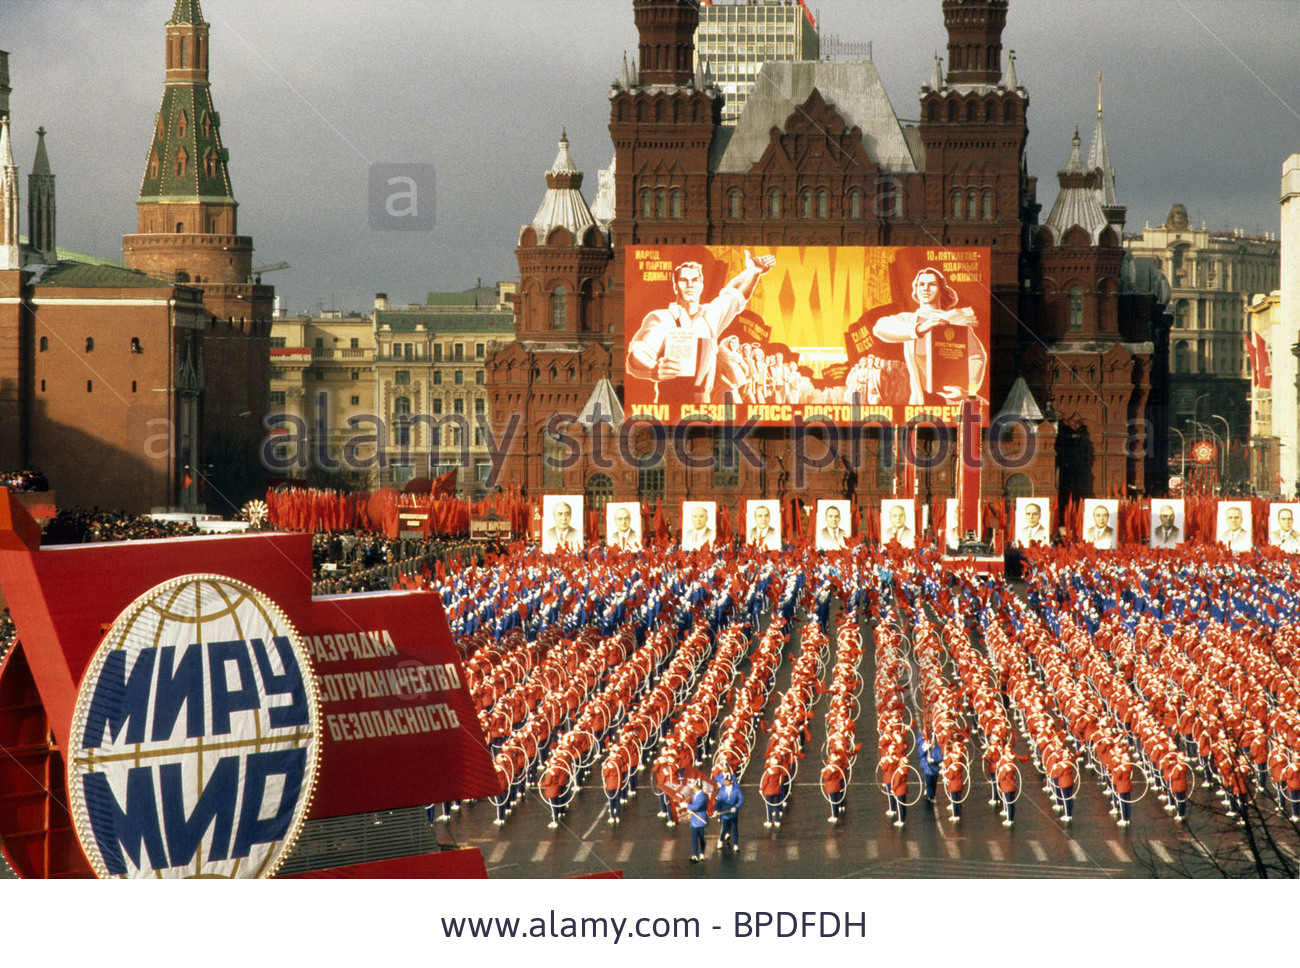 november-7-parade-in-red-square-1980-bpdfdh.jpg